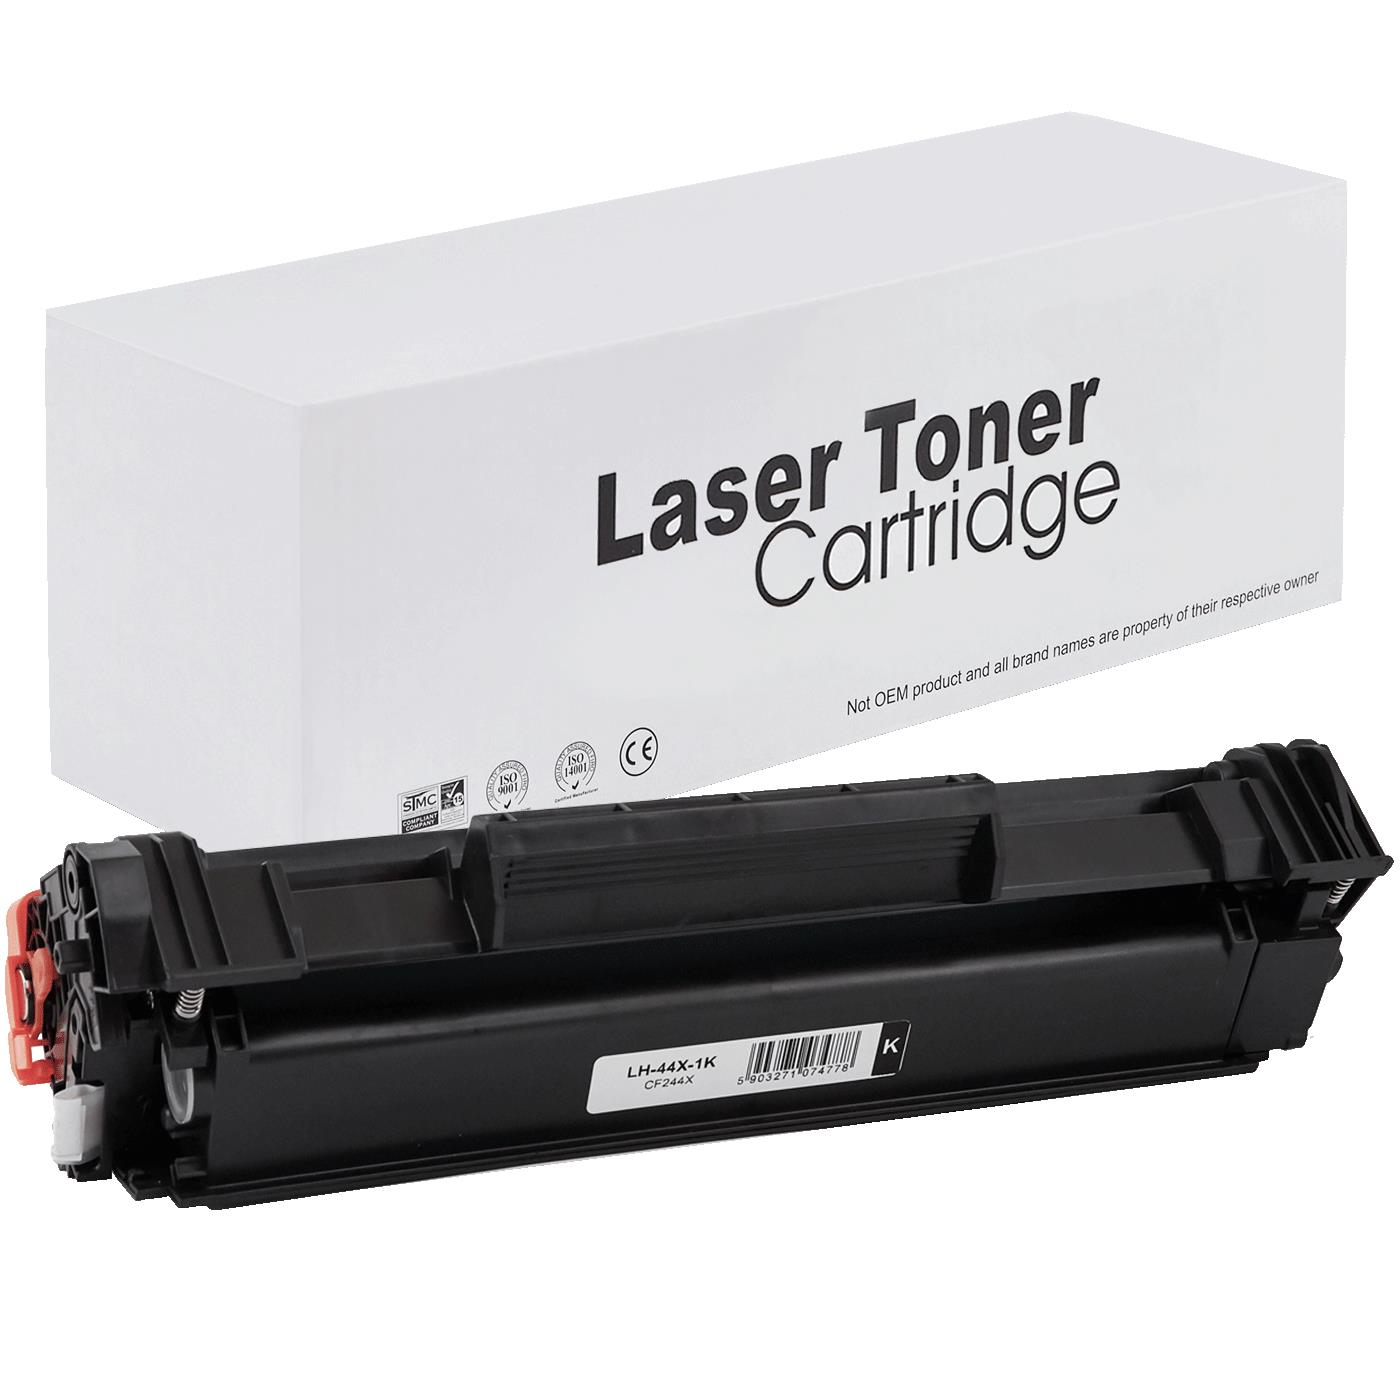 съвместима тонер касета за принтери и печатащи устройства на Hewlett Packard (HP) LaserJet Pro MFP M28a Toner HP-44X | CF244X. Ниски цени, прецизно изпълнение, високо качество.